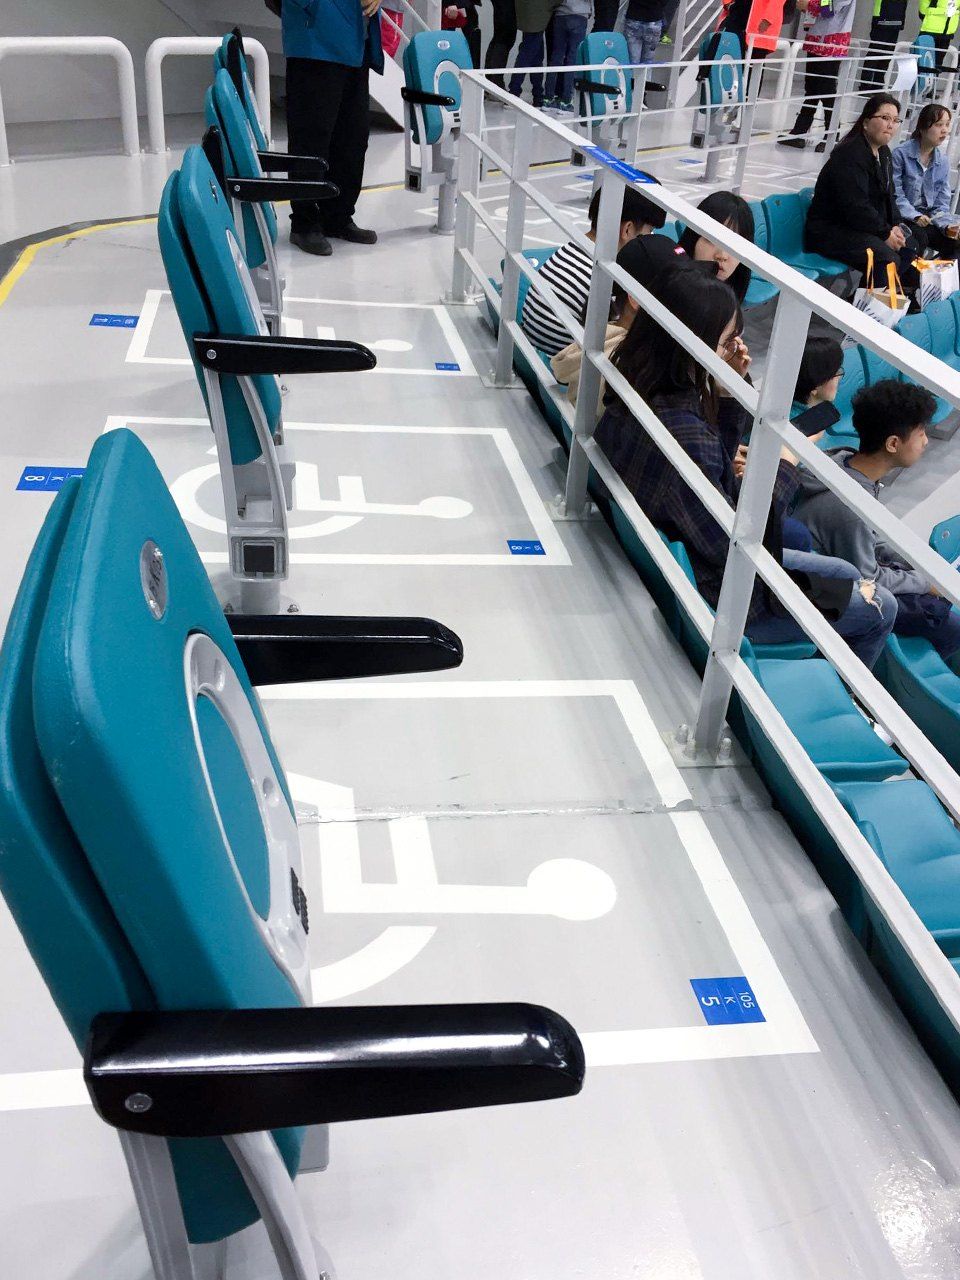 平昌的冰球场的轮椅席位。坐轮椅的人不能挨在一起